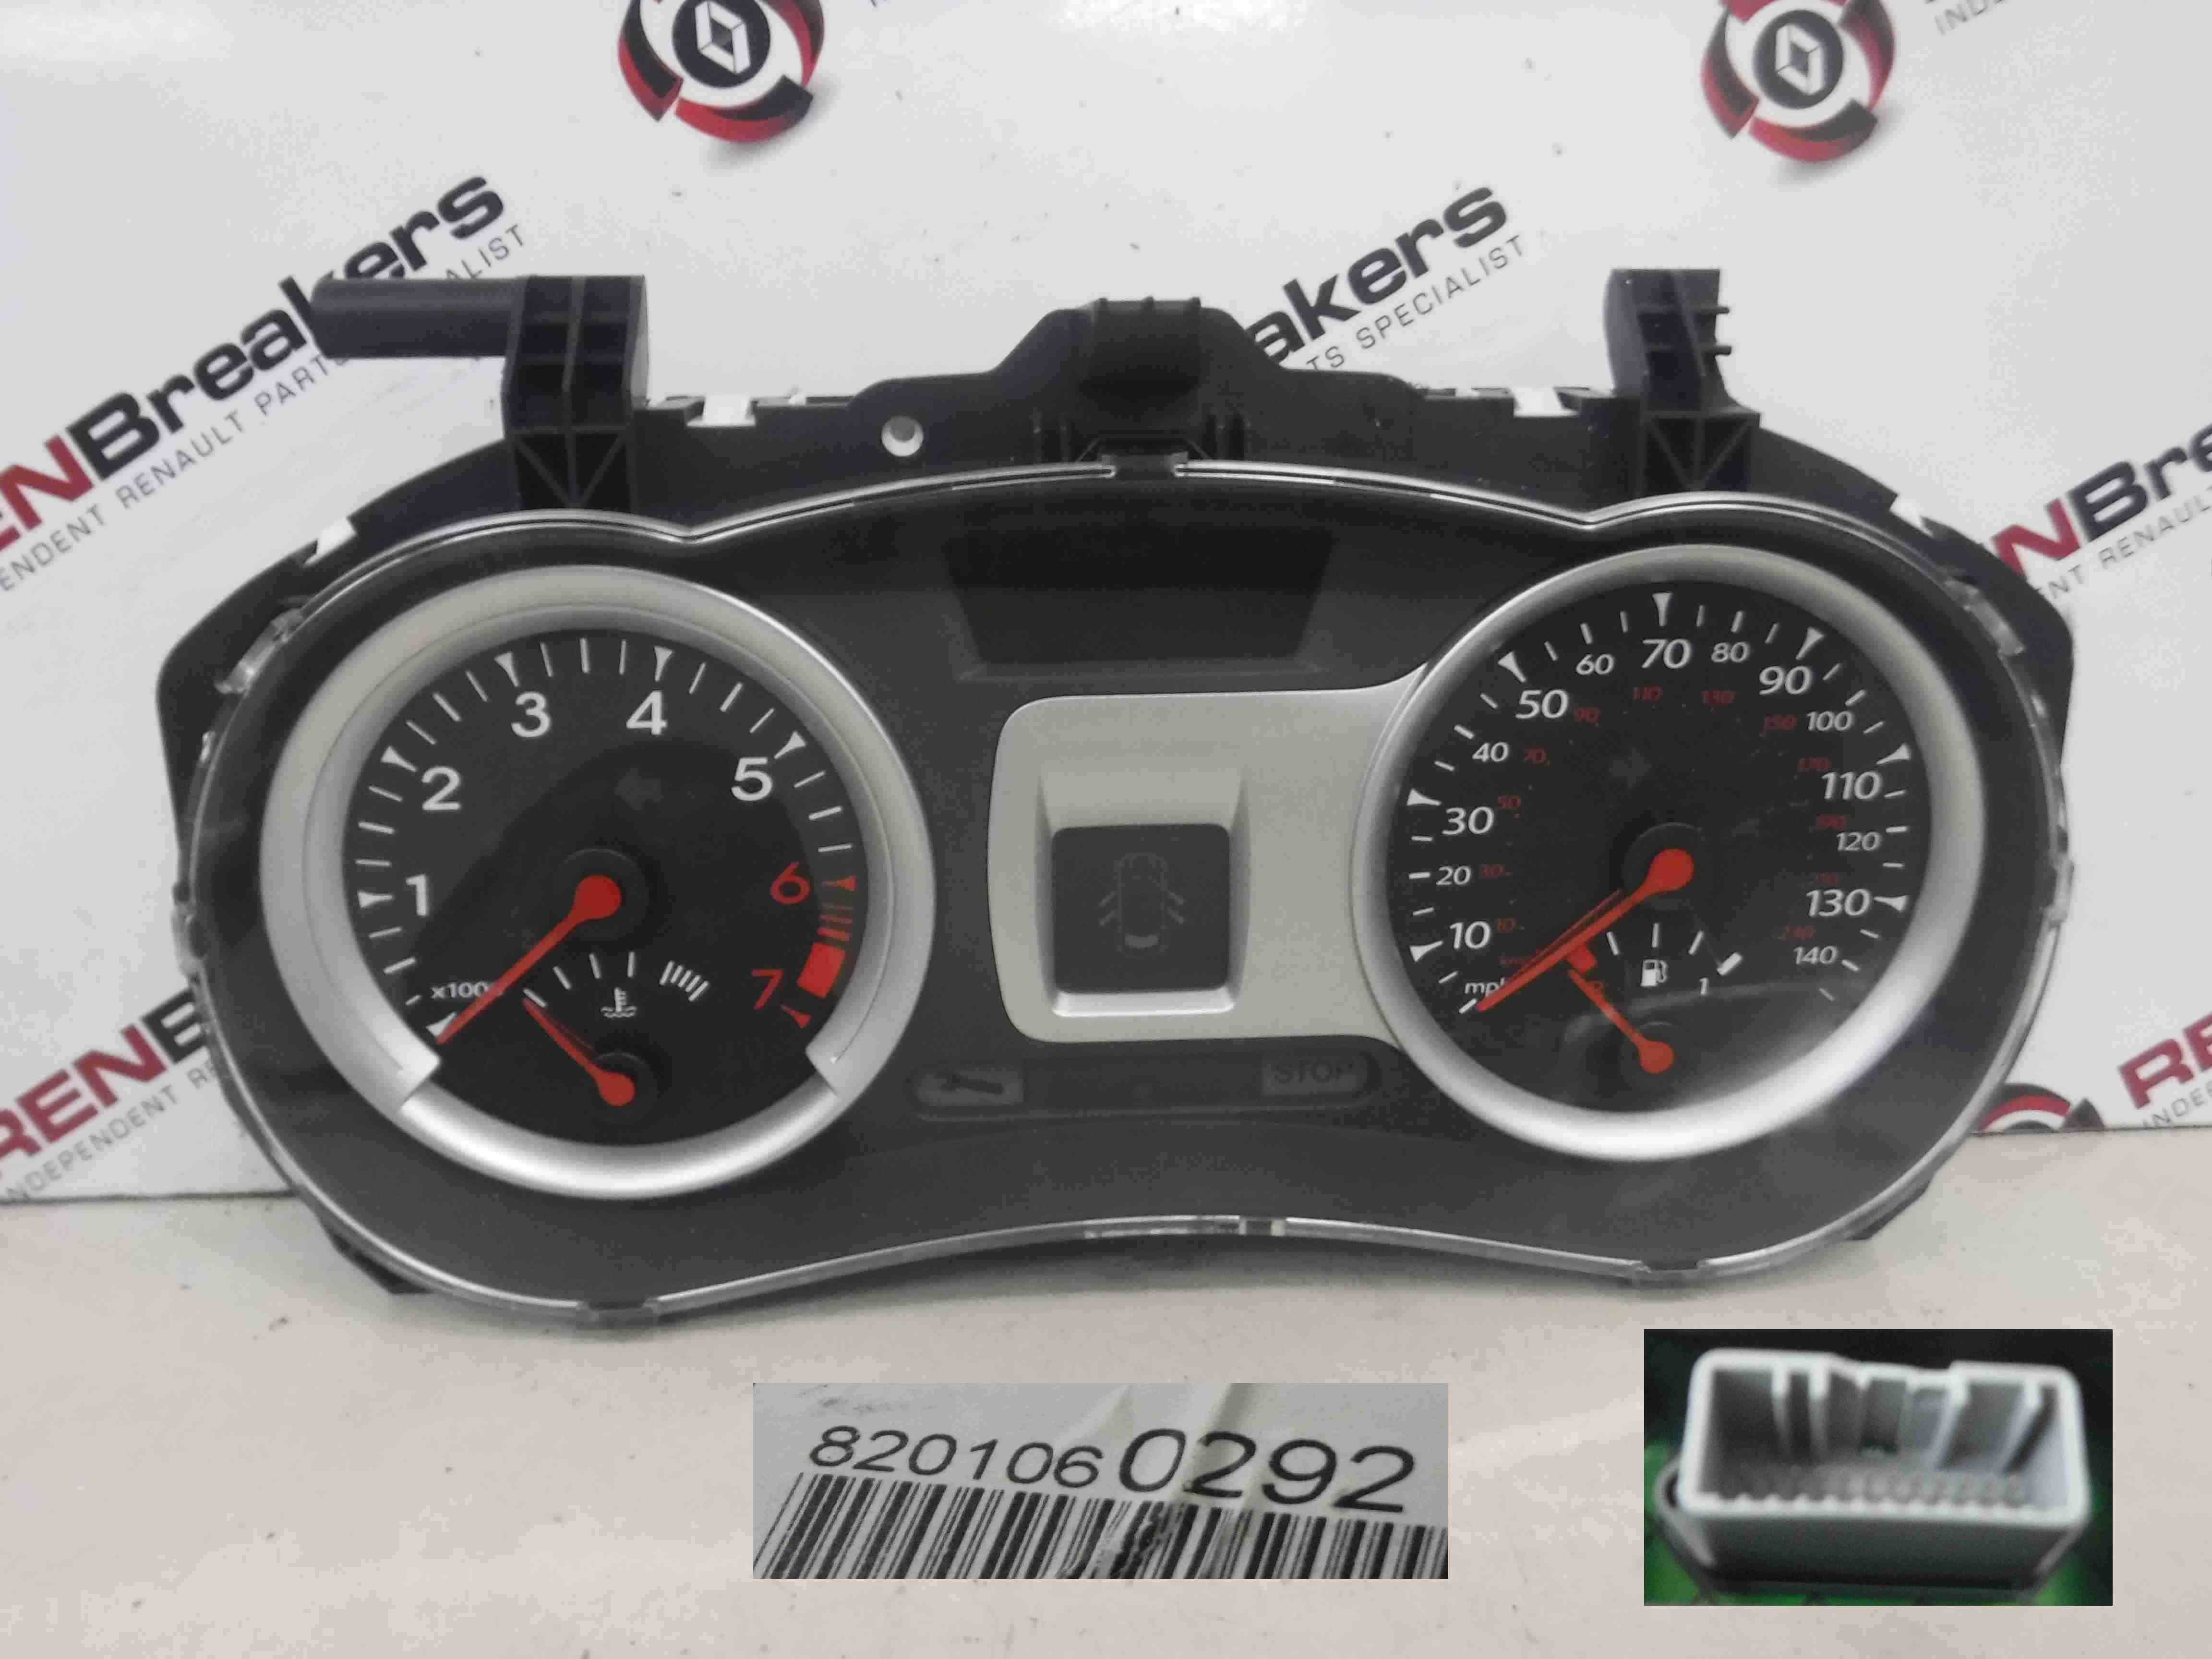 Renault Clio MK3 2009-2012 Instrument Panel Dials Clock 8201060292